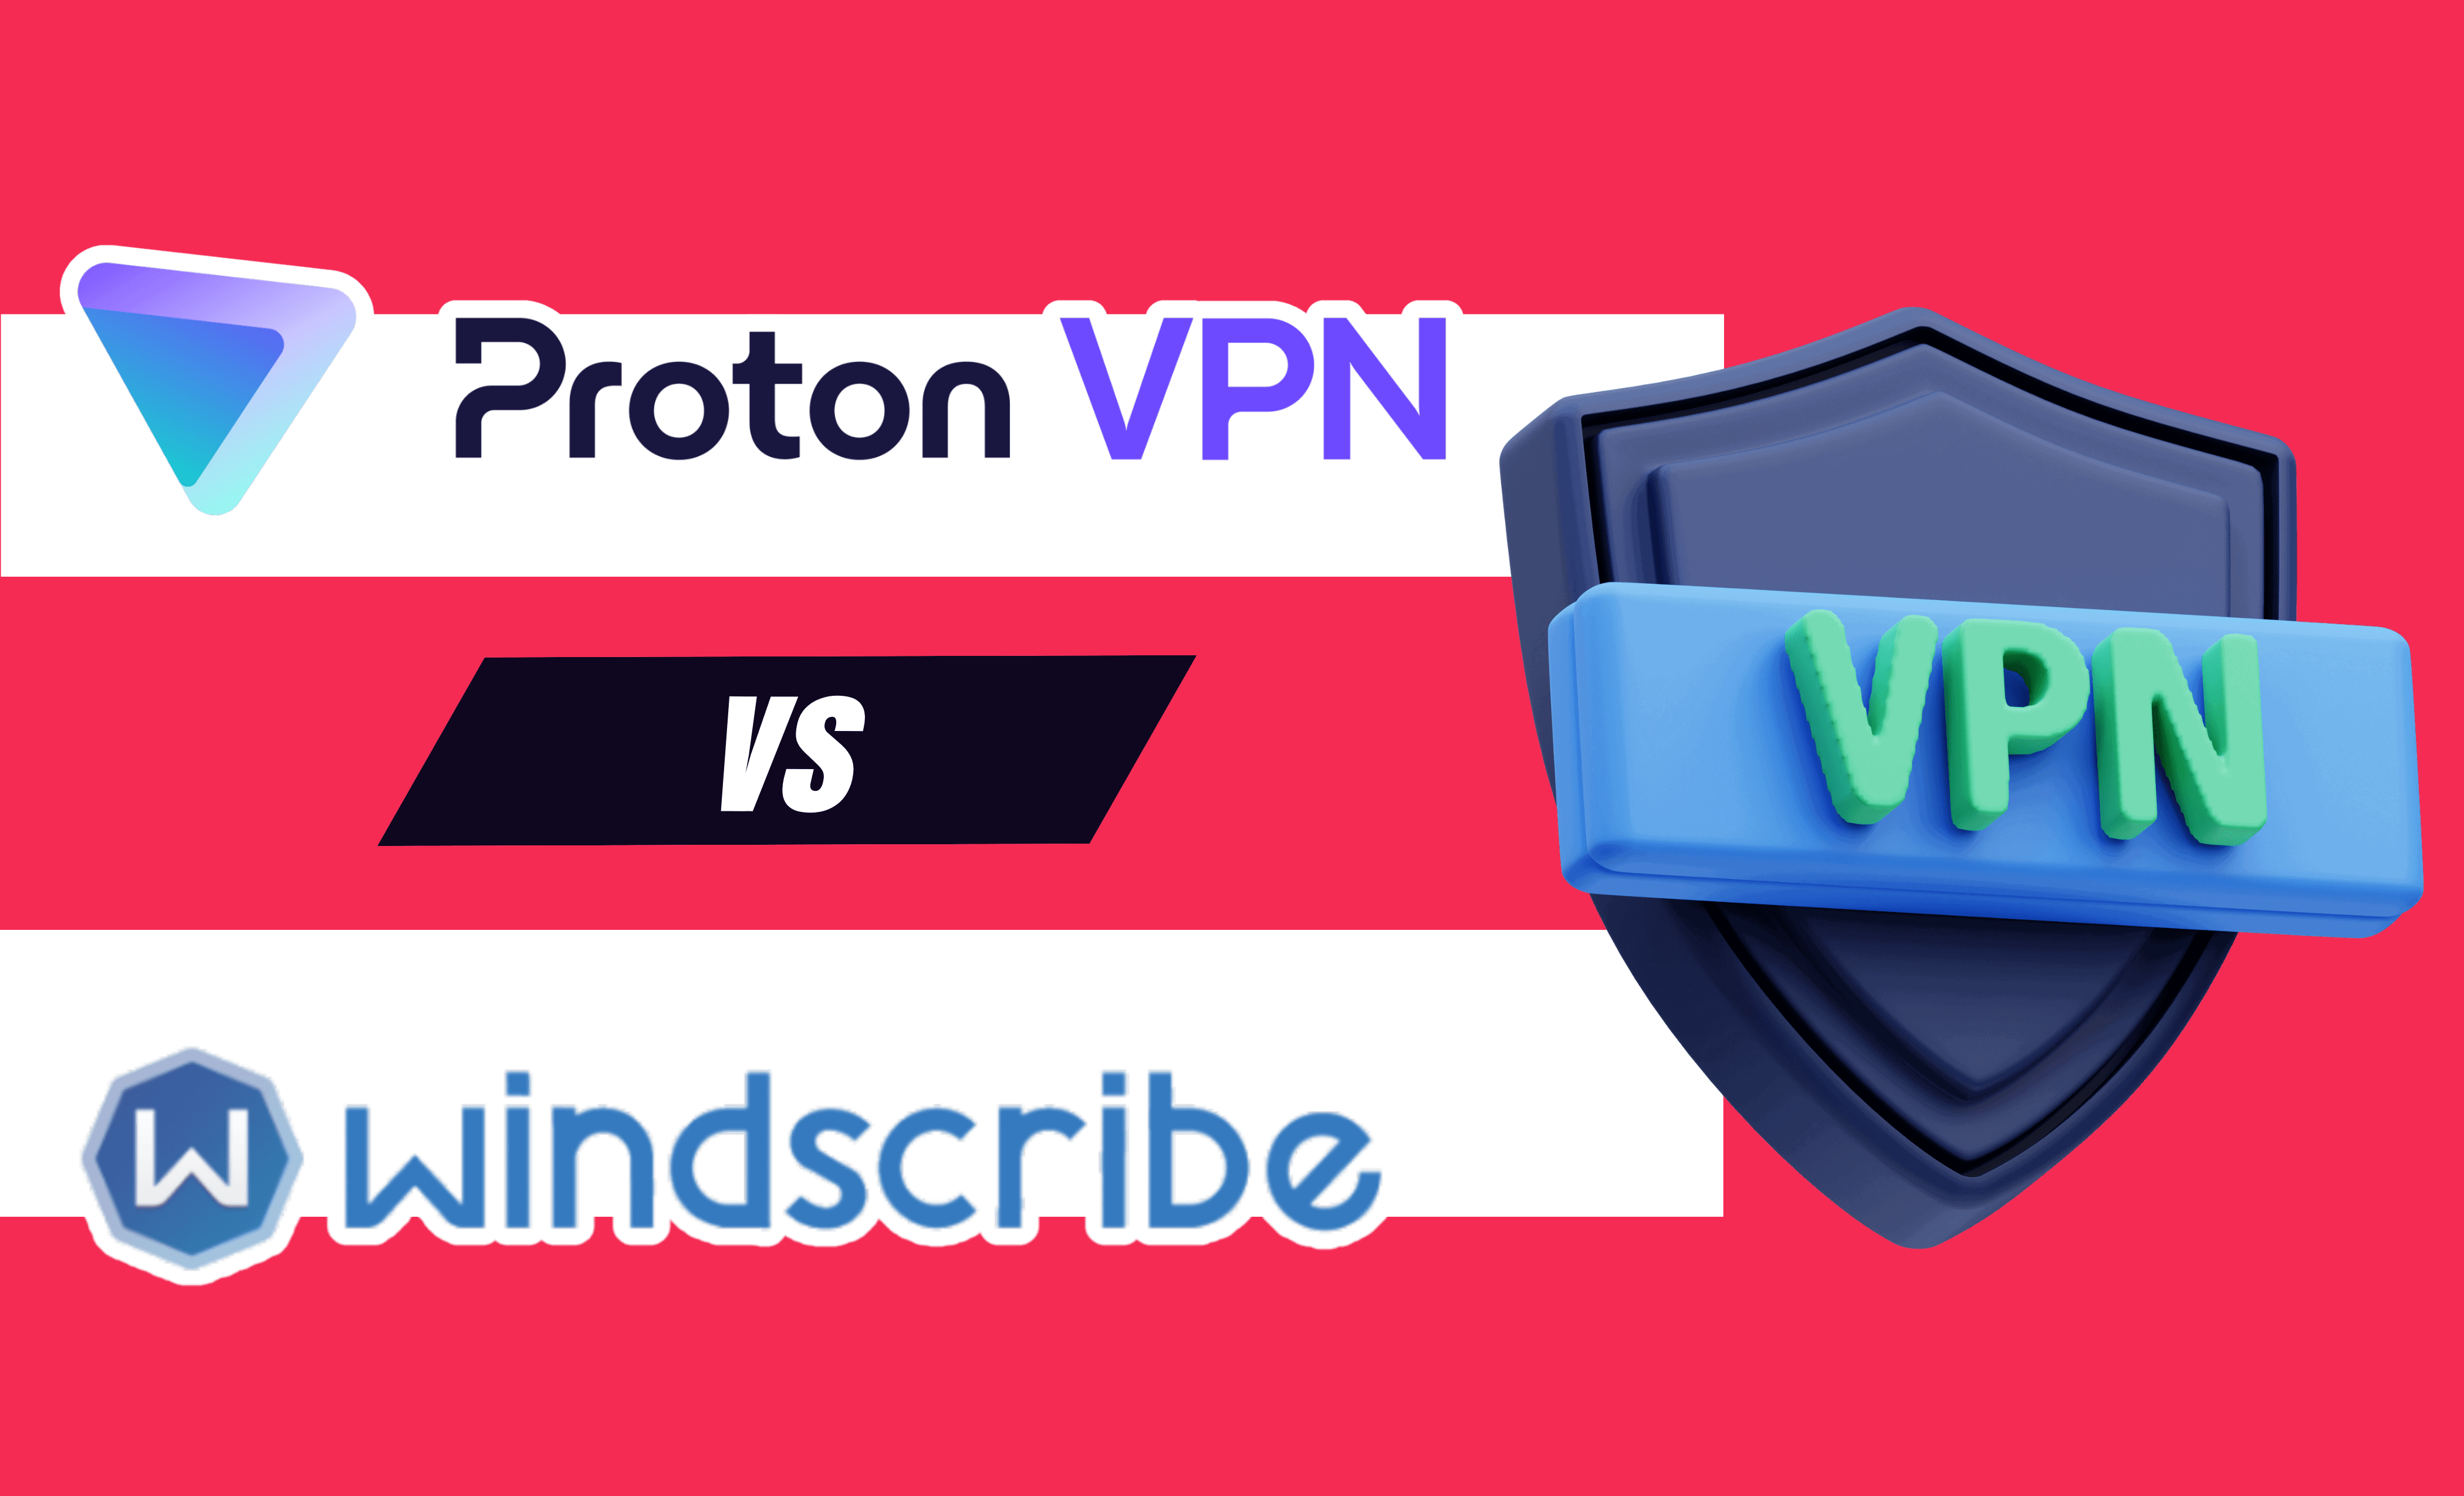 Proton VPN vs Windscribe